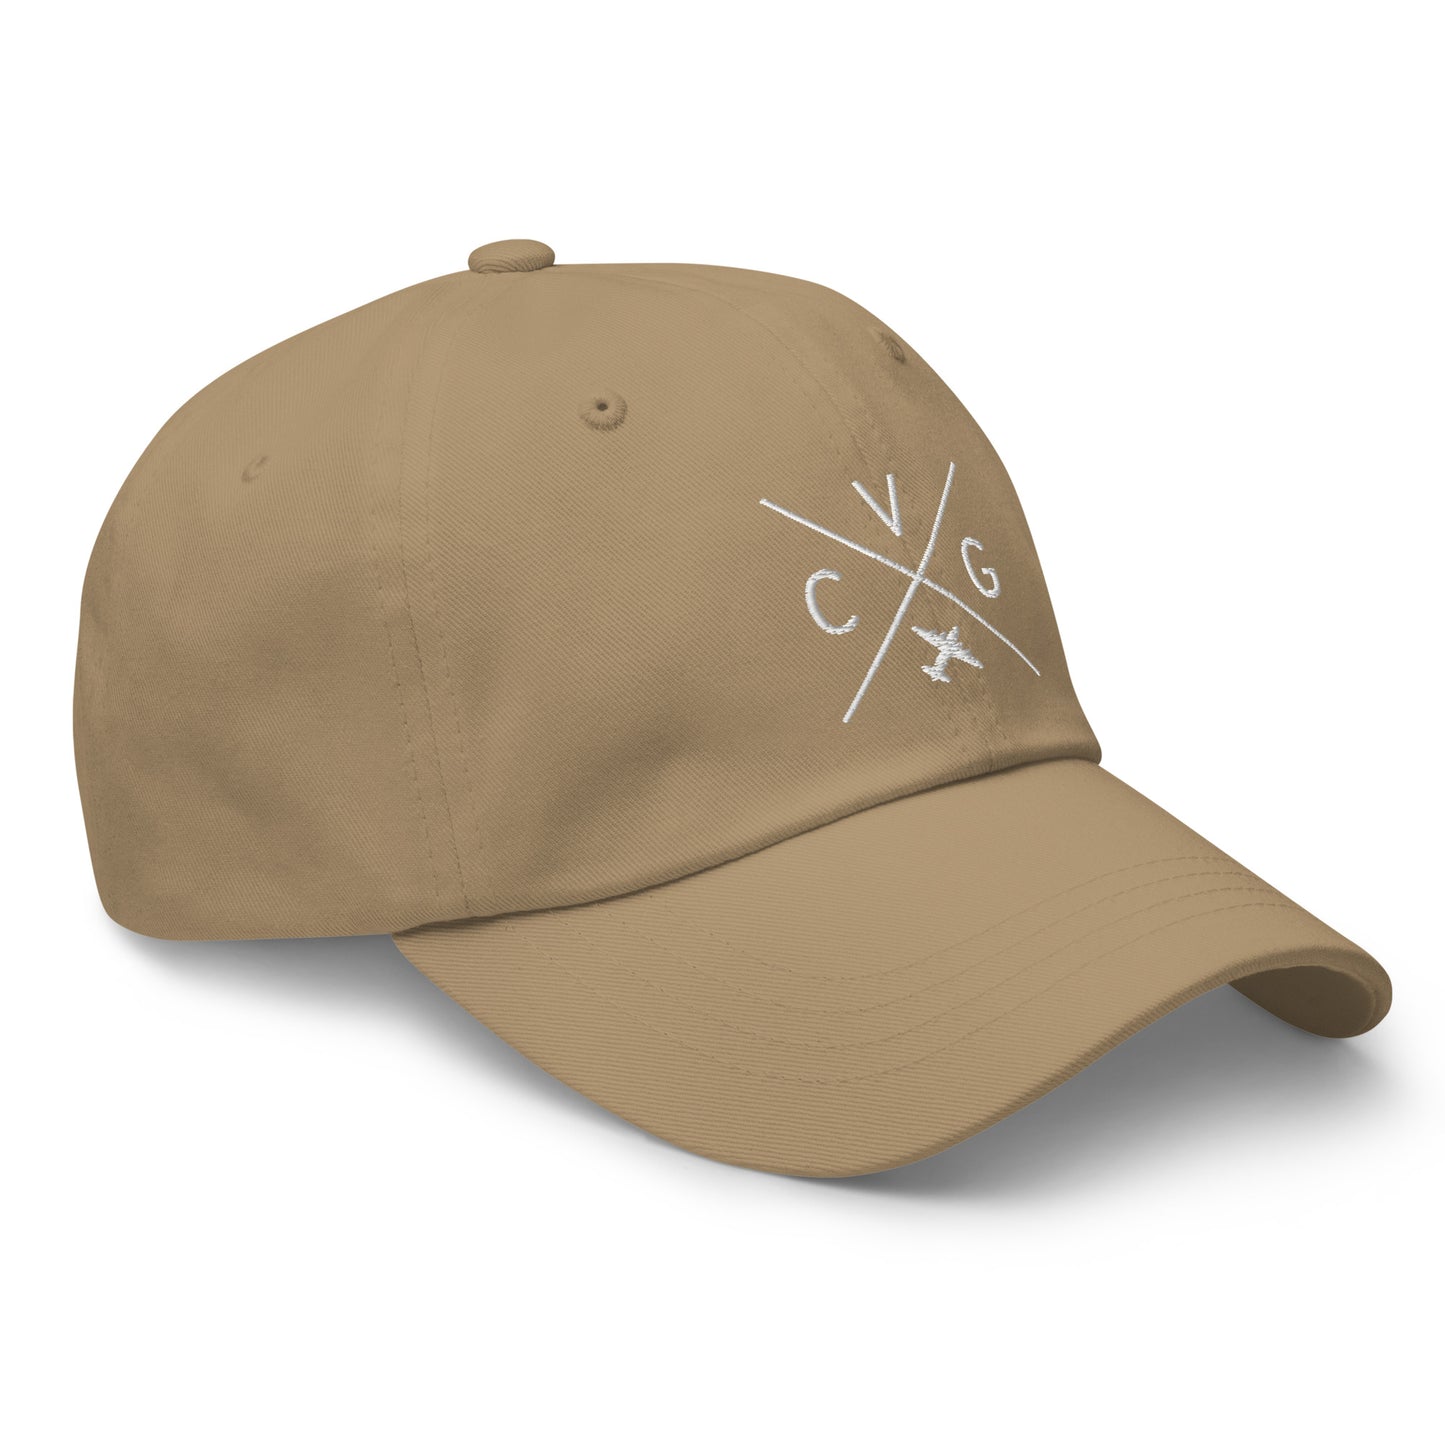 Crossed-X Dad Hat - White • CVG Cincinnati • YHM Designs - Image 23